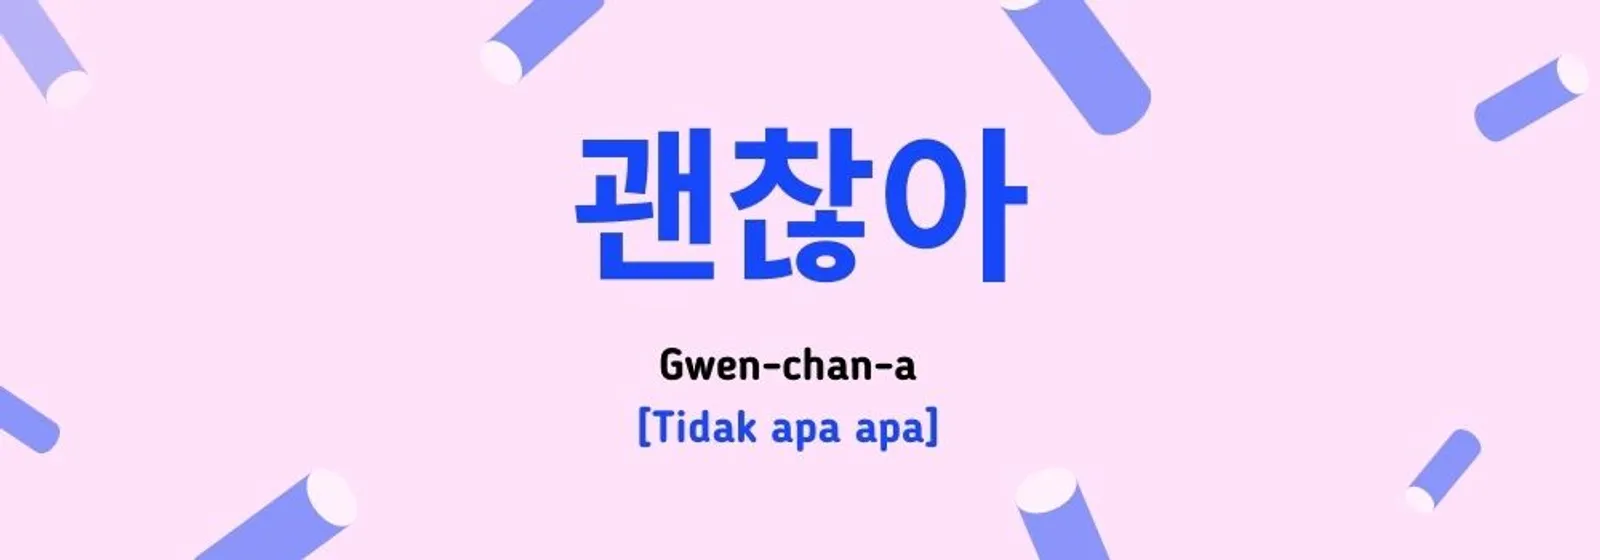 Ini 11 Ucapan Memberi Semangat dalam Bahasa Korea